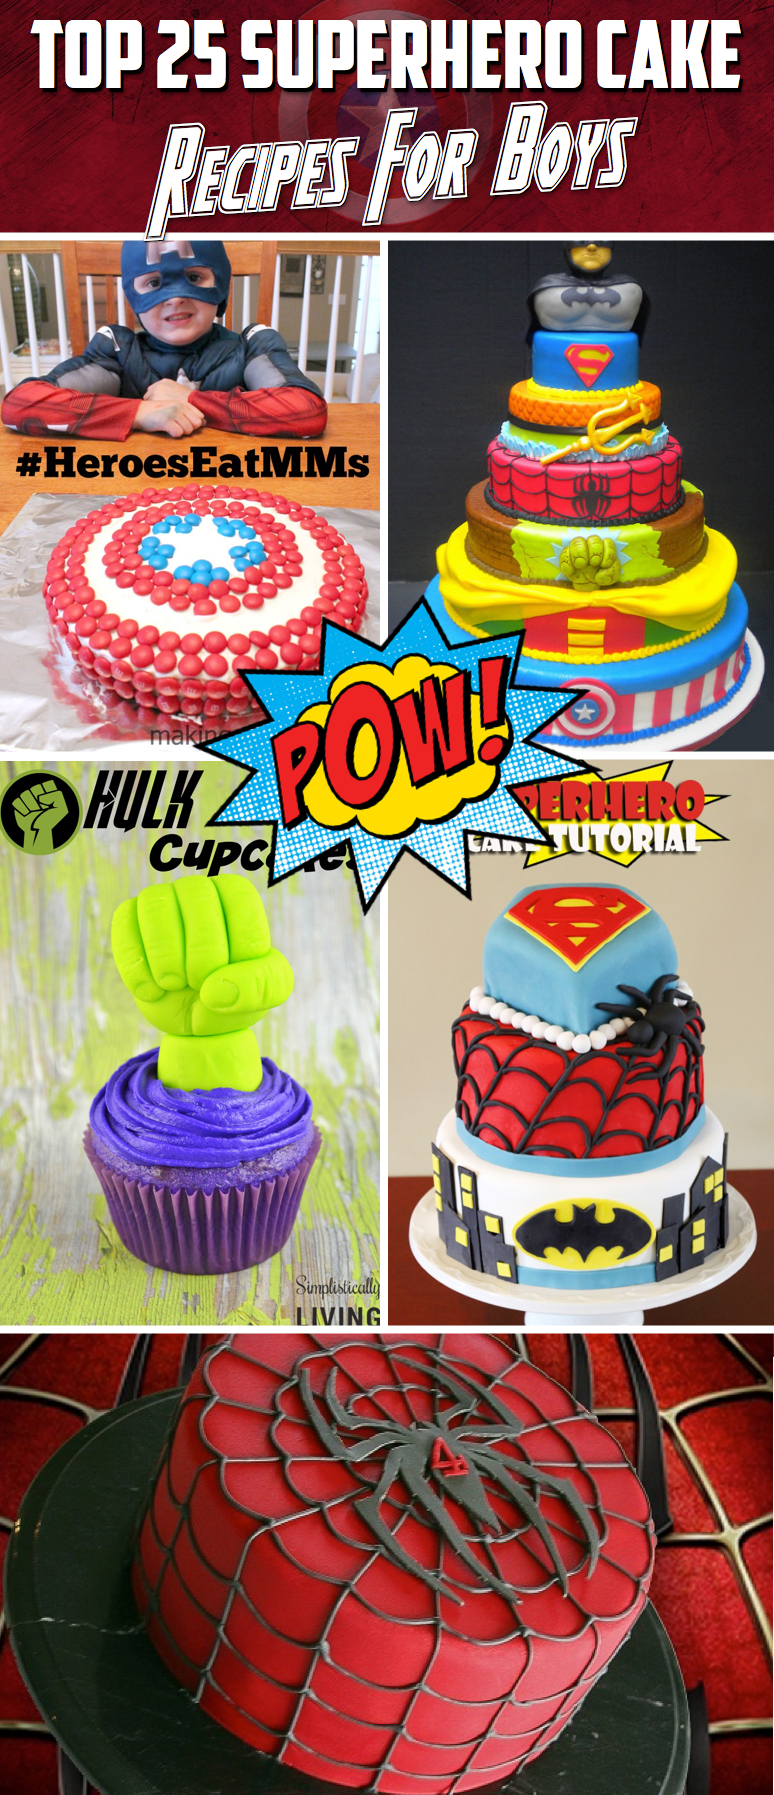 Top 25 Superhero Cake Recipes and Ideas For Boys